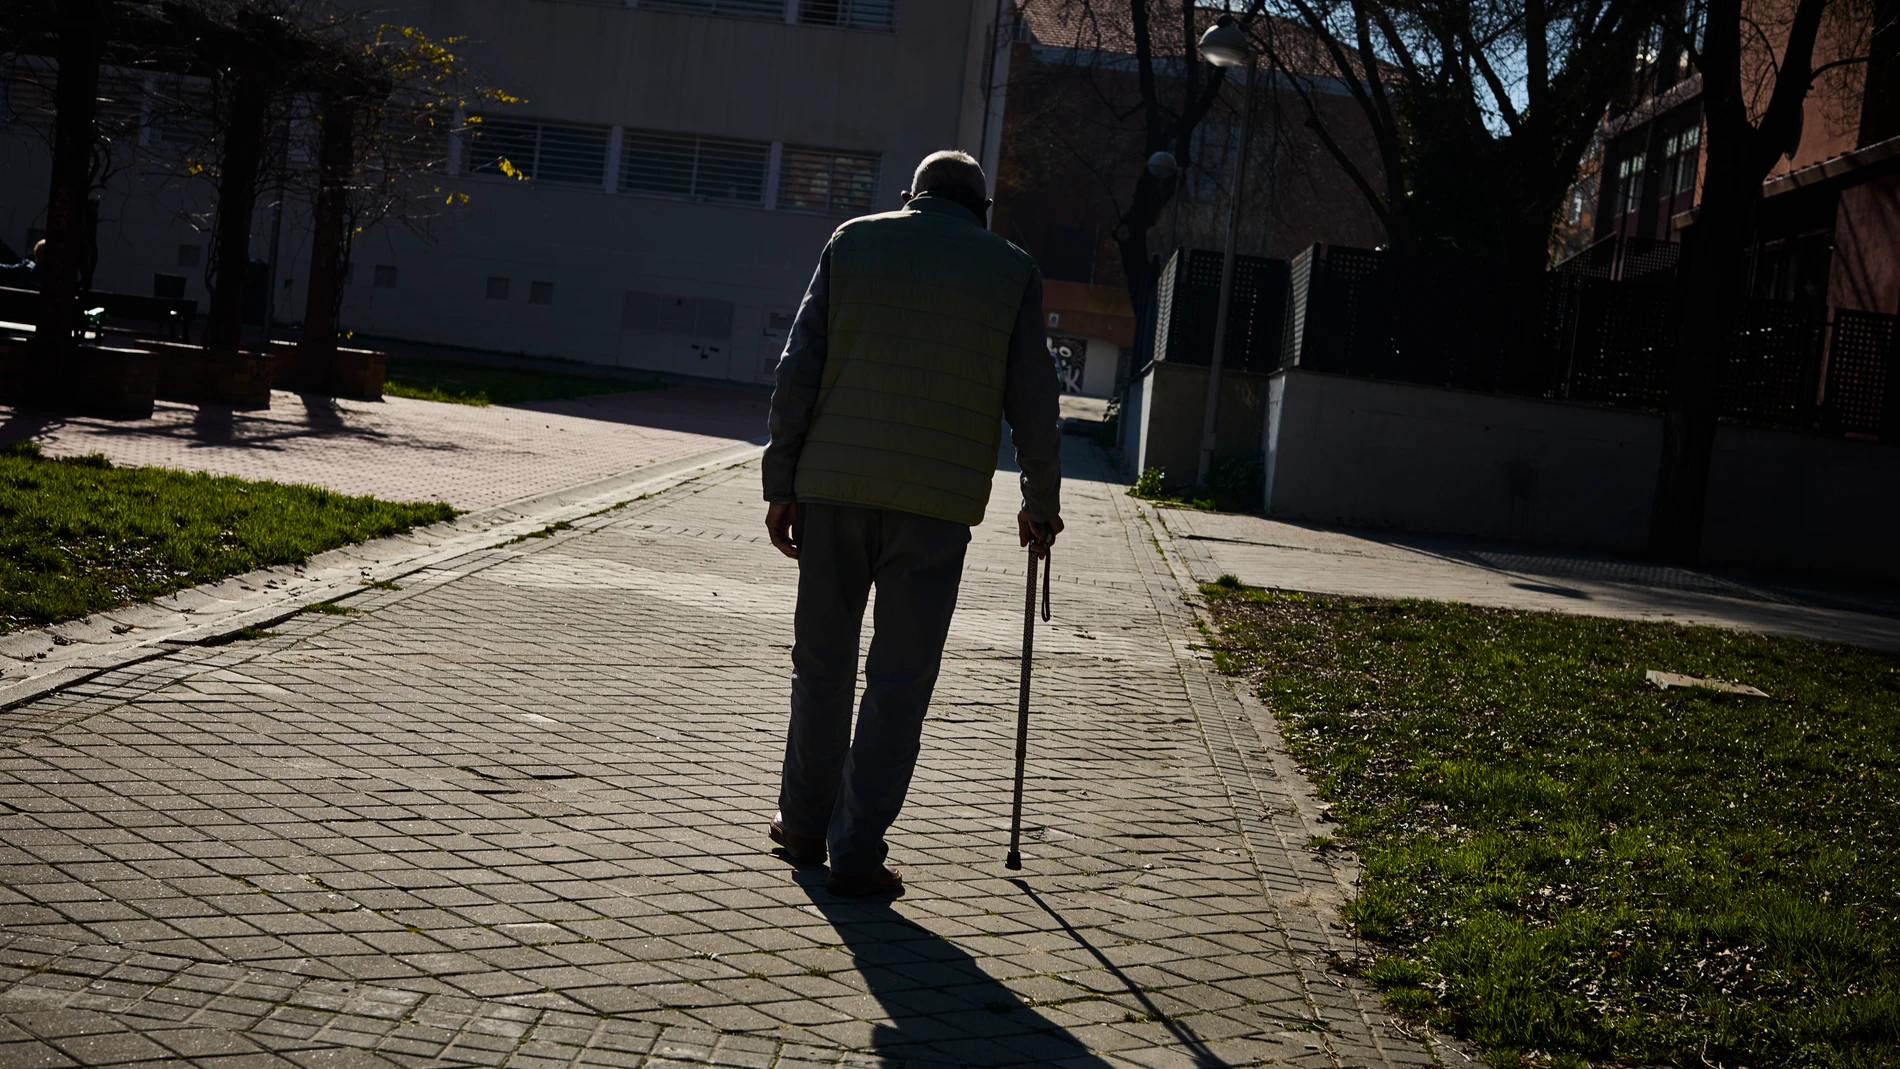 Mayores jubilados de la tercera edad pasean y toman el sol en un parque de Madrid.